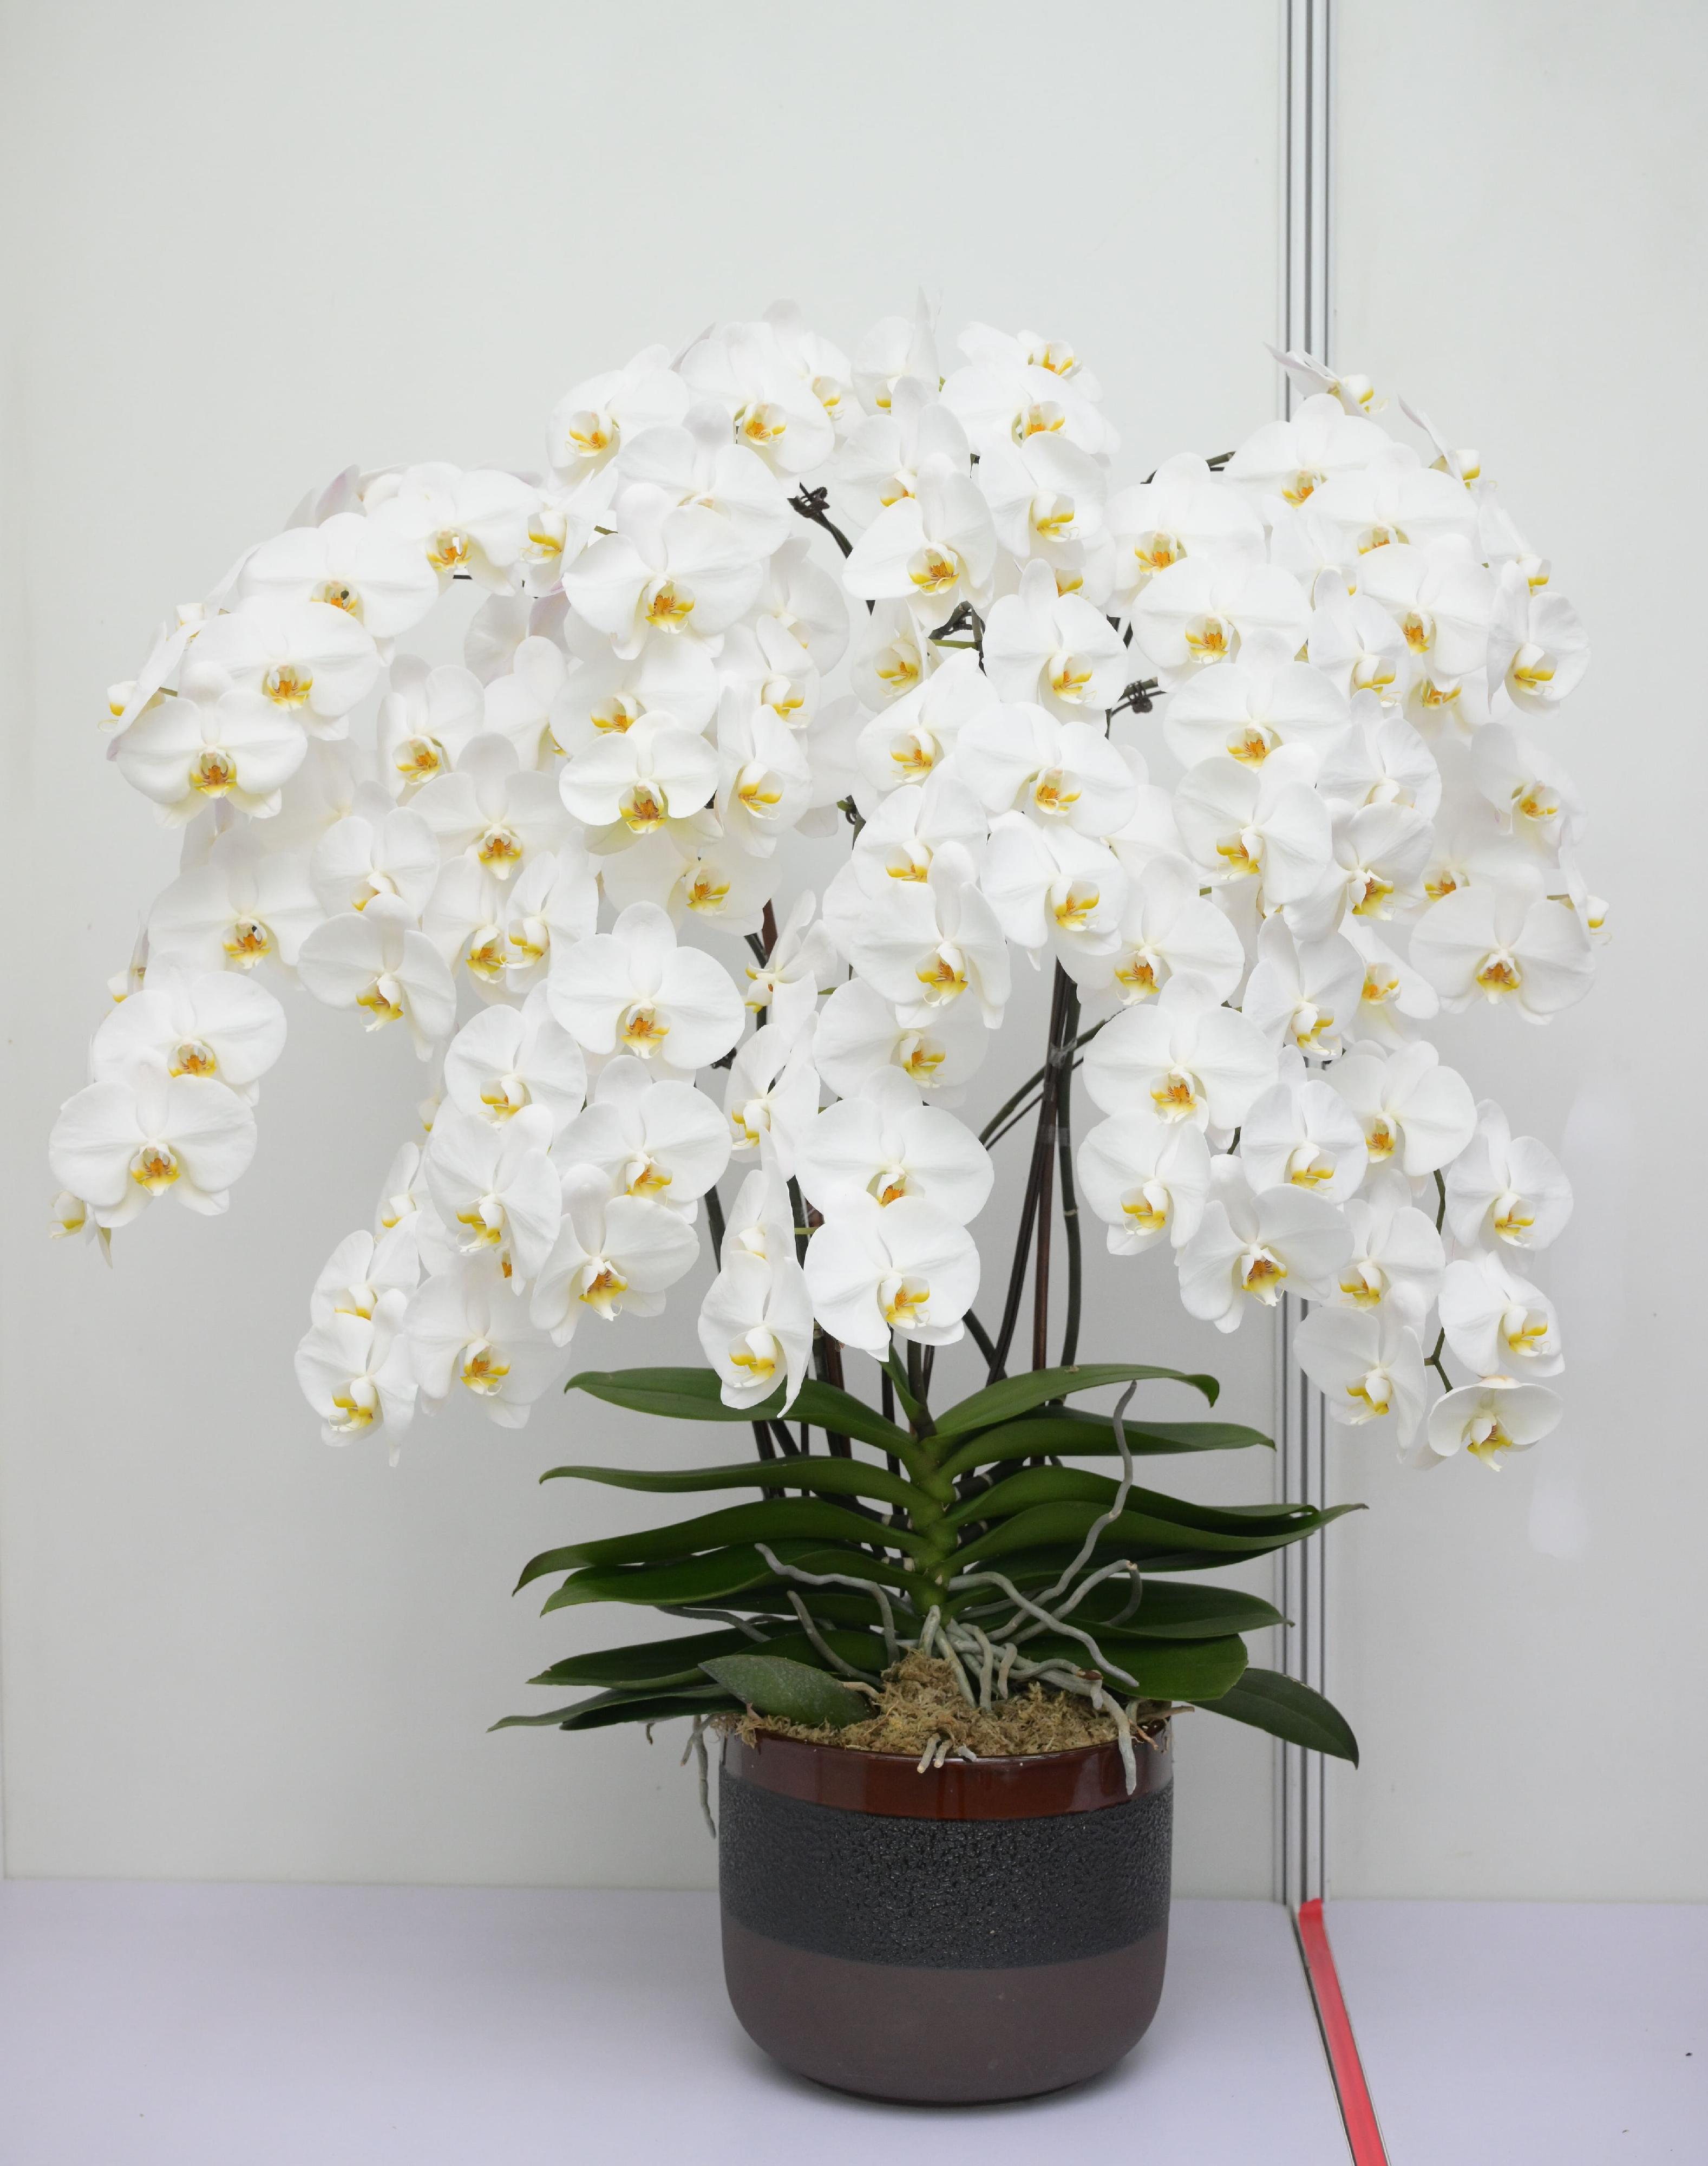 香港花卉展覽的其中一項主要活動——植物展品比賽今日（三月十六日）公布得獎名單，圖中一盆形態優美的蘭花為公開組全場總冠軍展品。